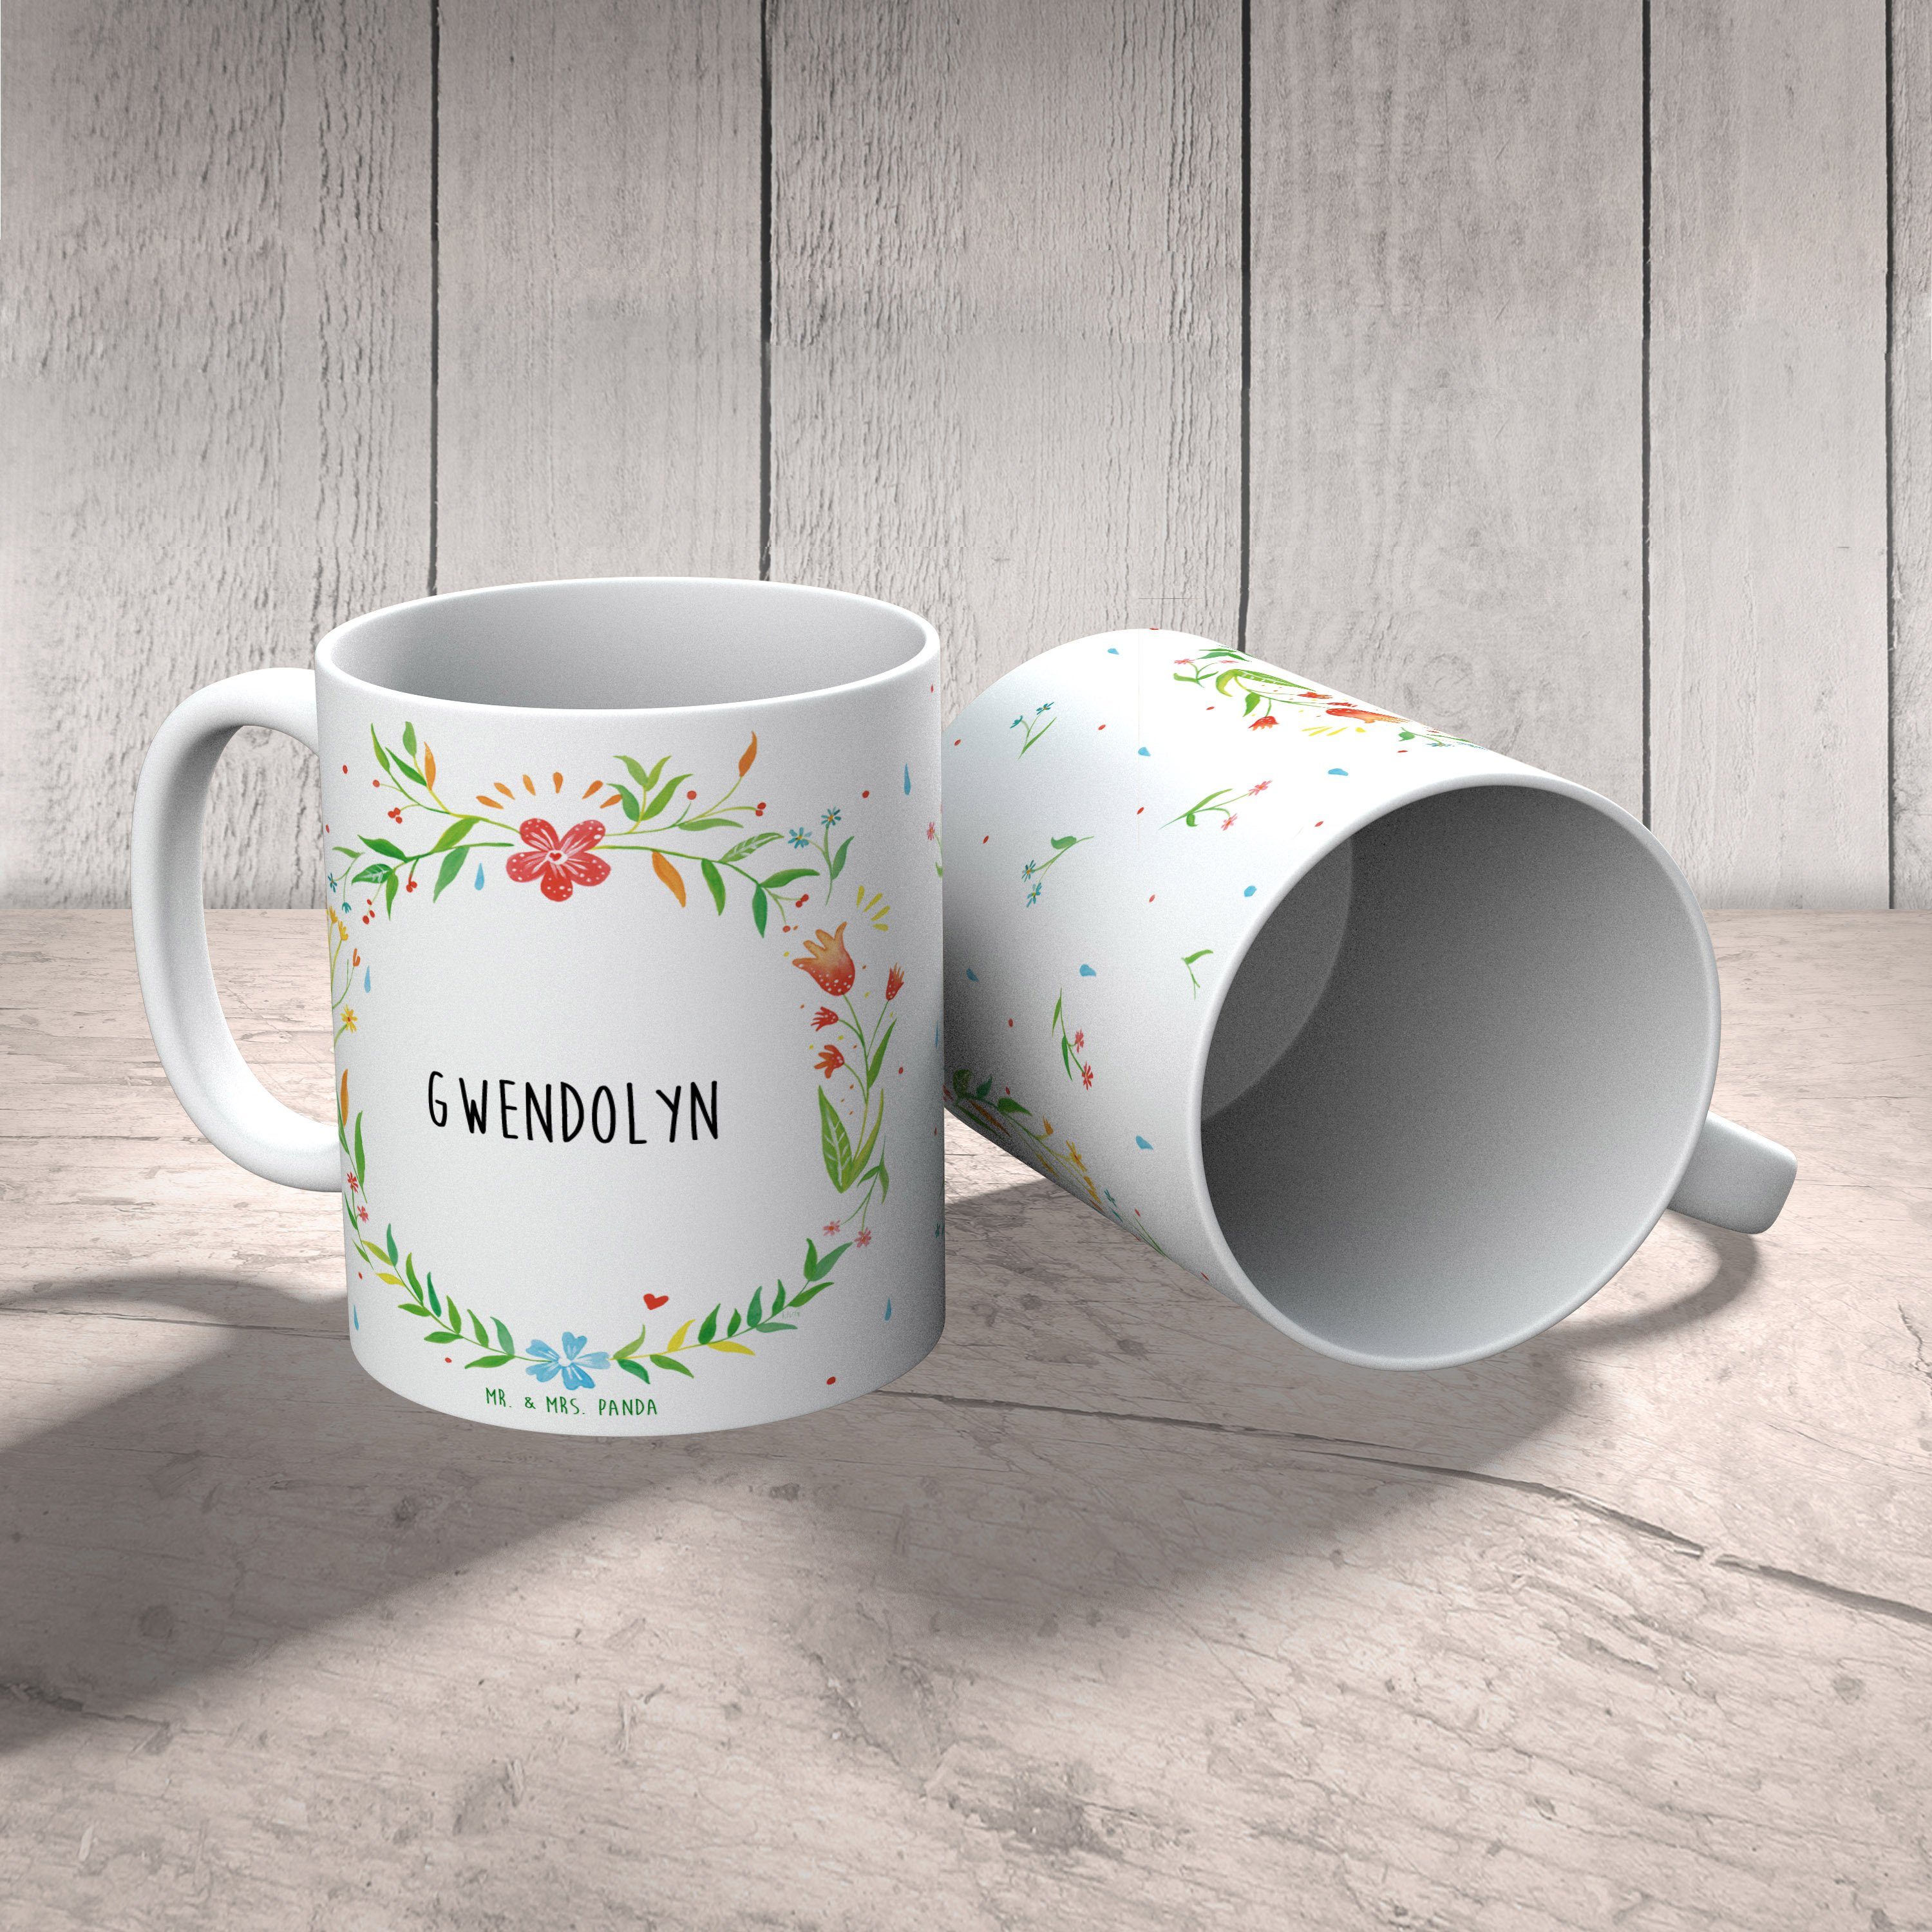 Keramik Tasse, Mr. Mrs. - & Panda Kaffeetasse, Tasse Gwendolyn Tasse Büro Tasse, Geschenk, Sprüche,